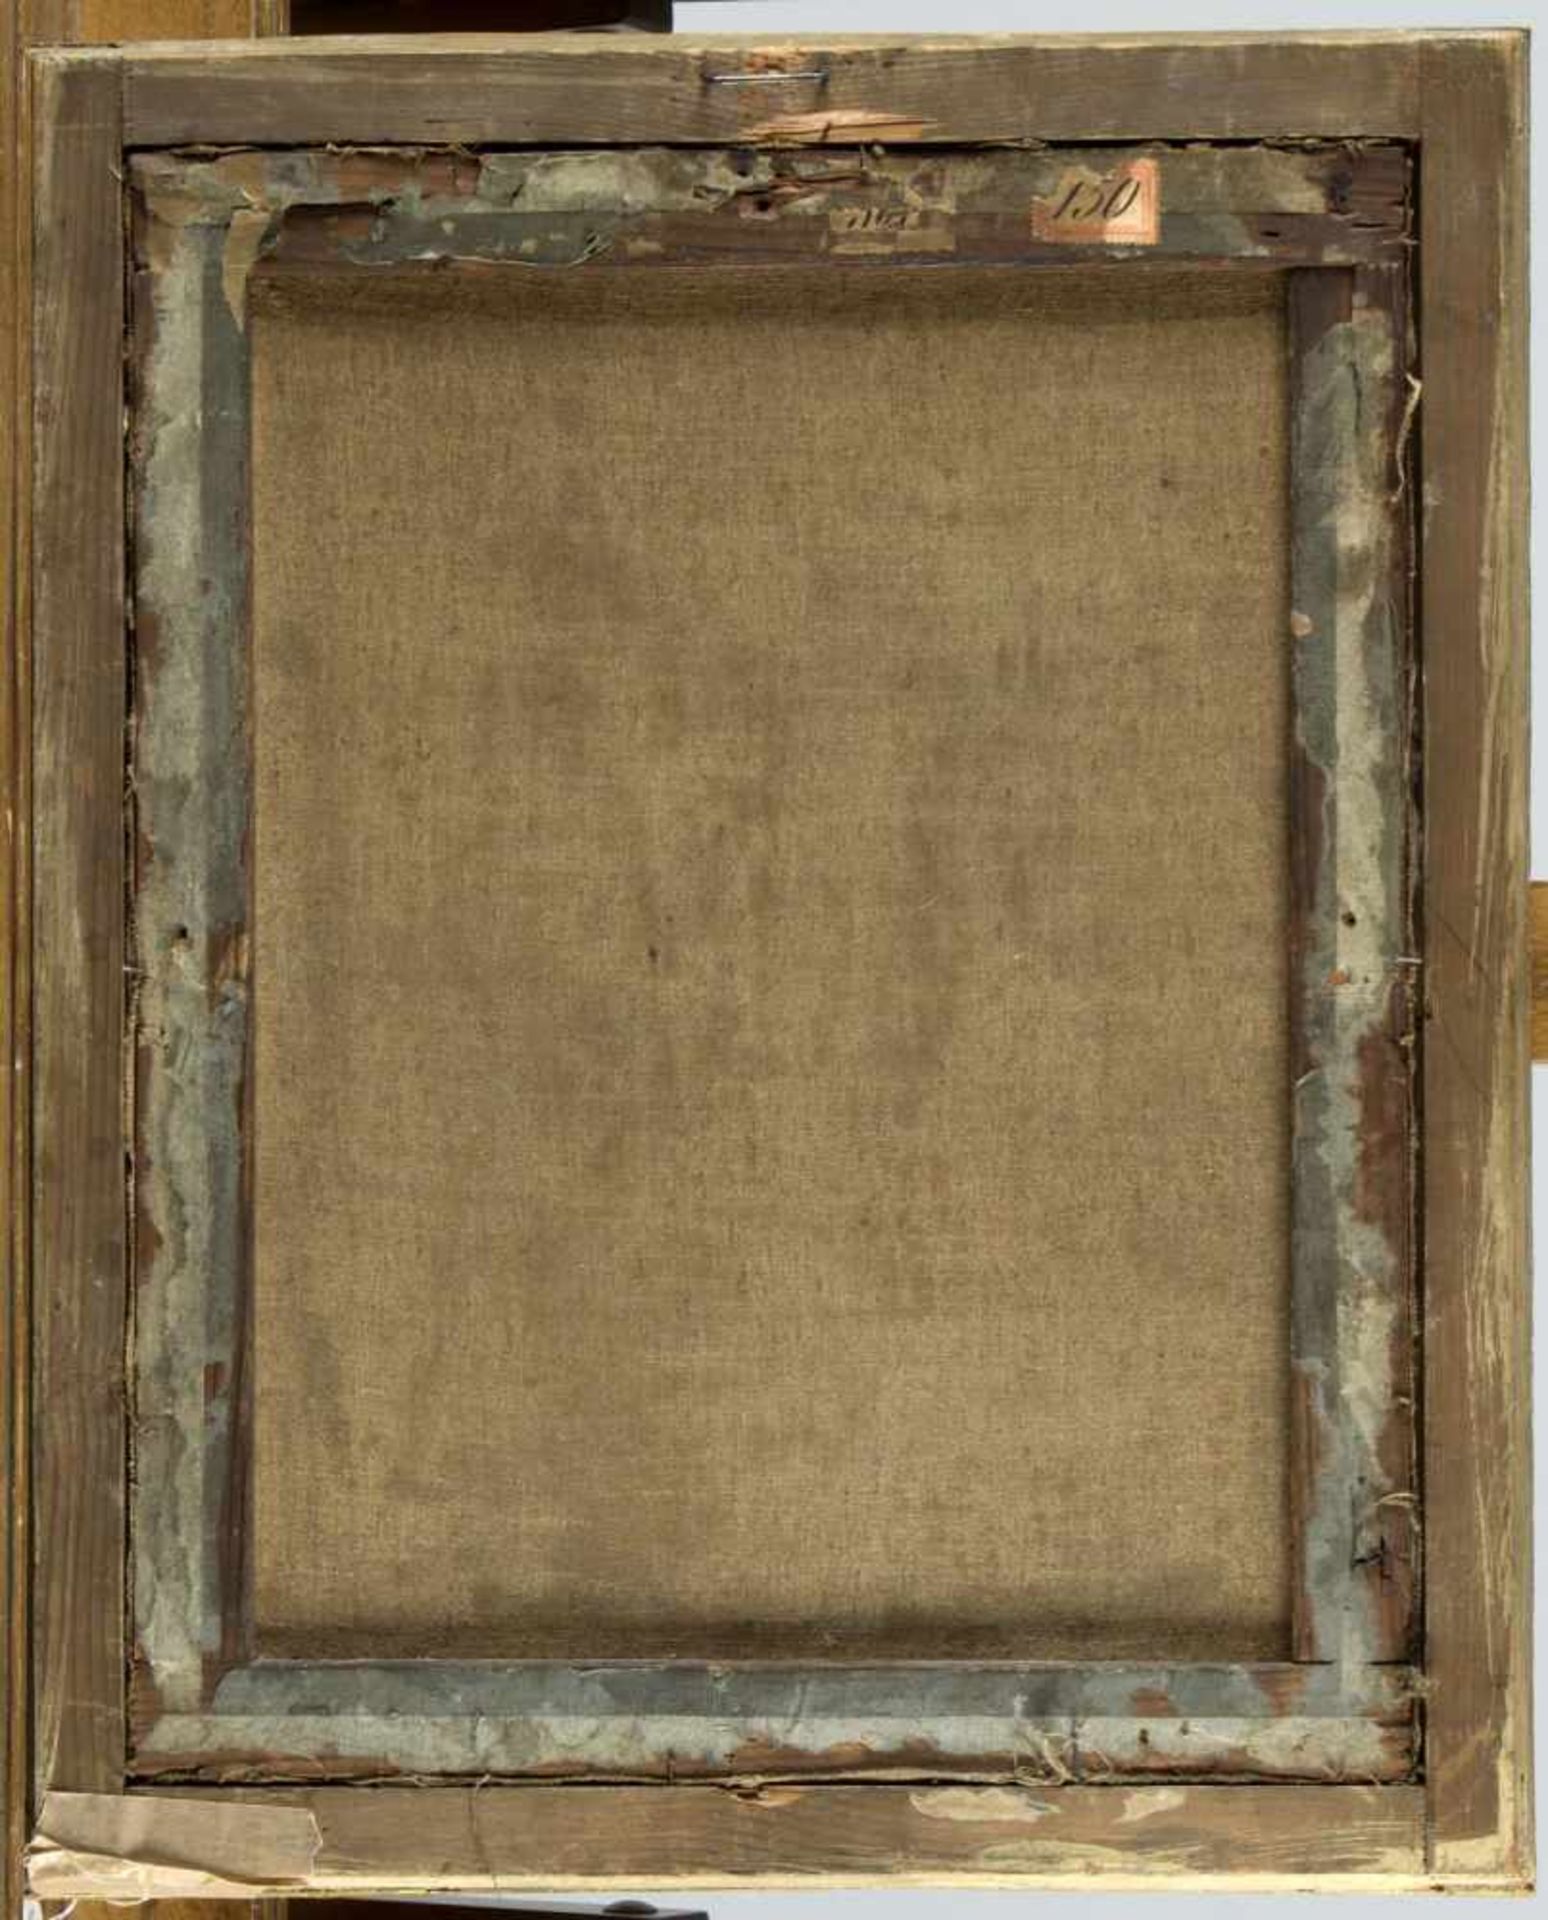 Frankreich, 18. Jh.Portrait einer Dame mit Perlenschmuck. Öl/Lwd., doubliert. 45 x 35 cm. Gerahmt. - Bild 2 aus 2